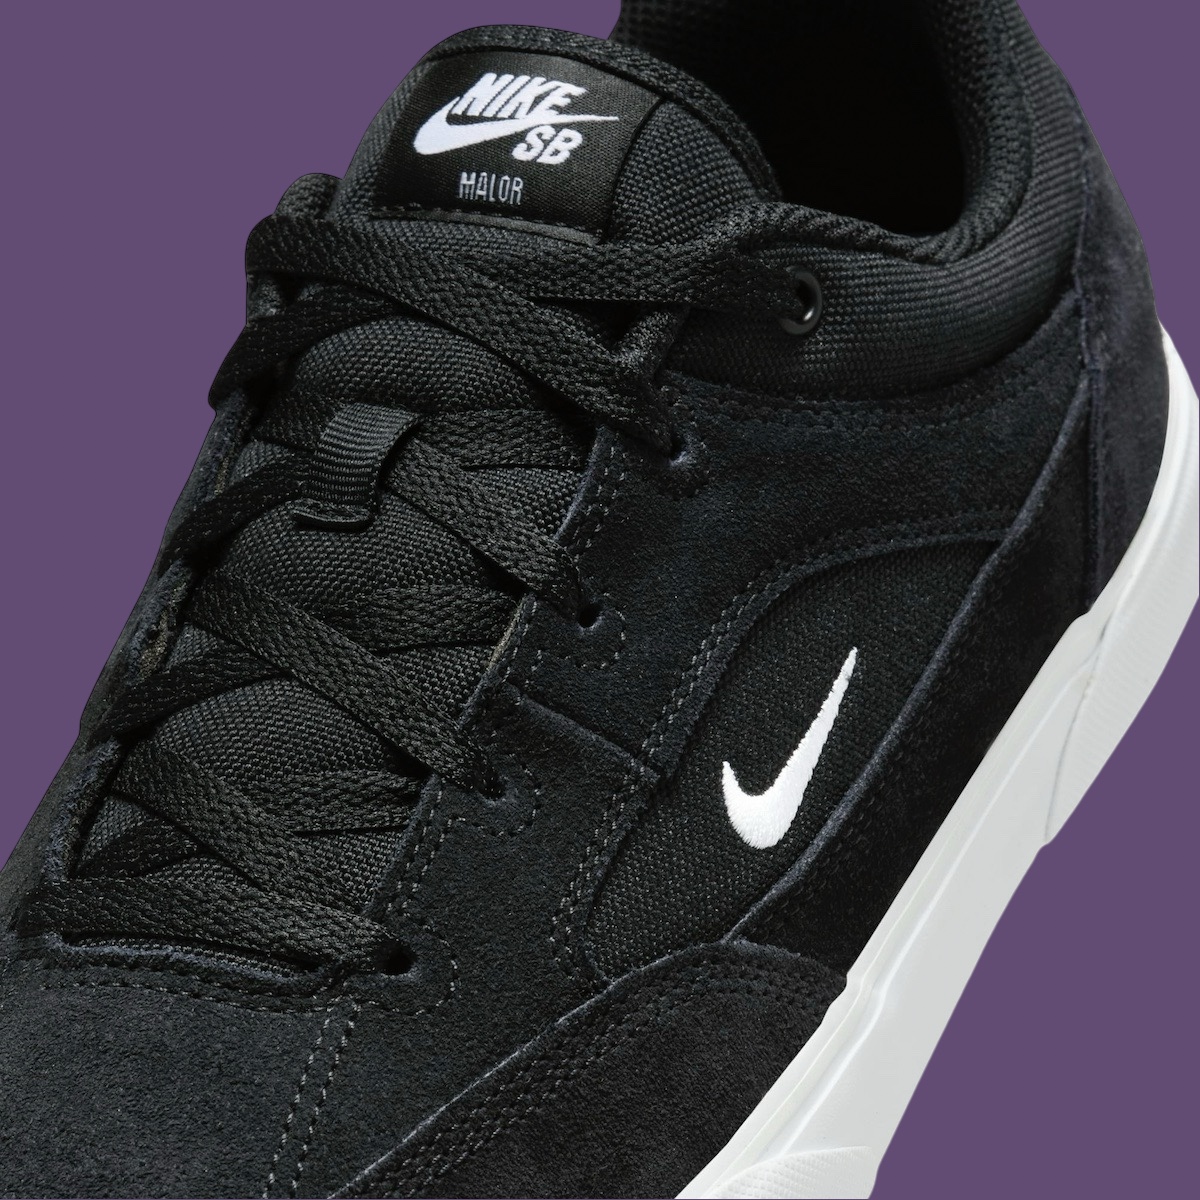 Nike SB Malor Black FV6064 001 6